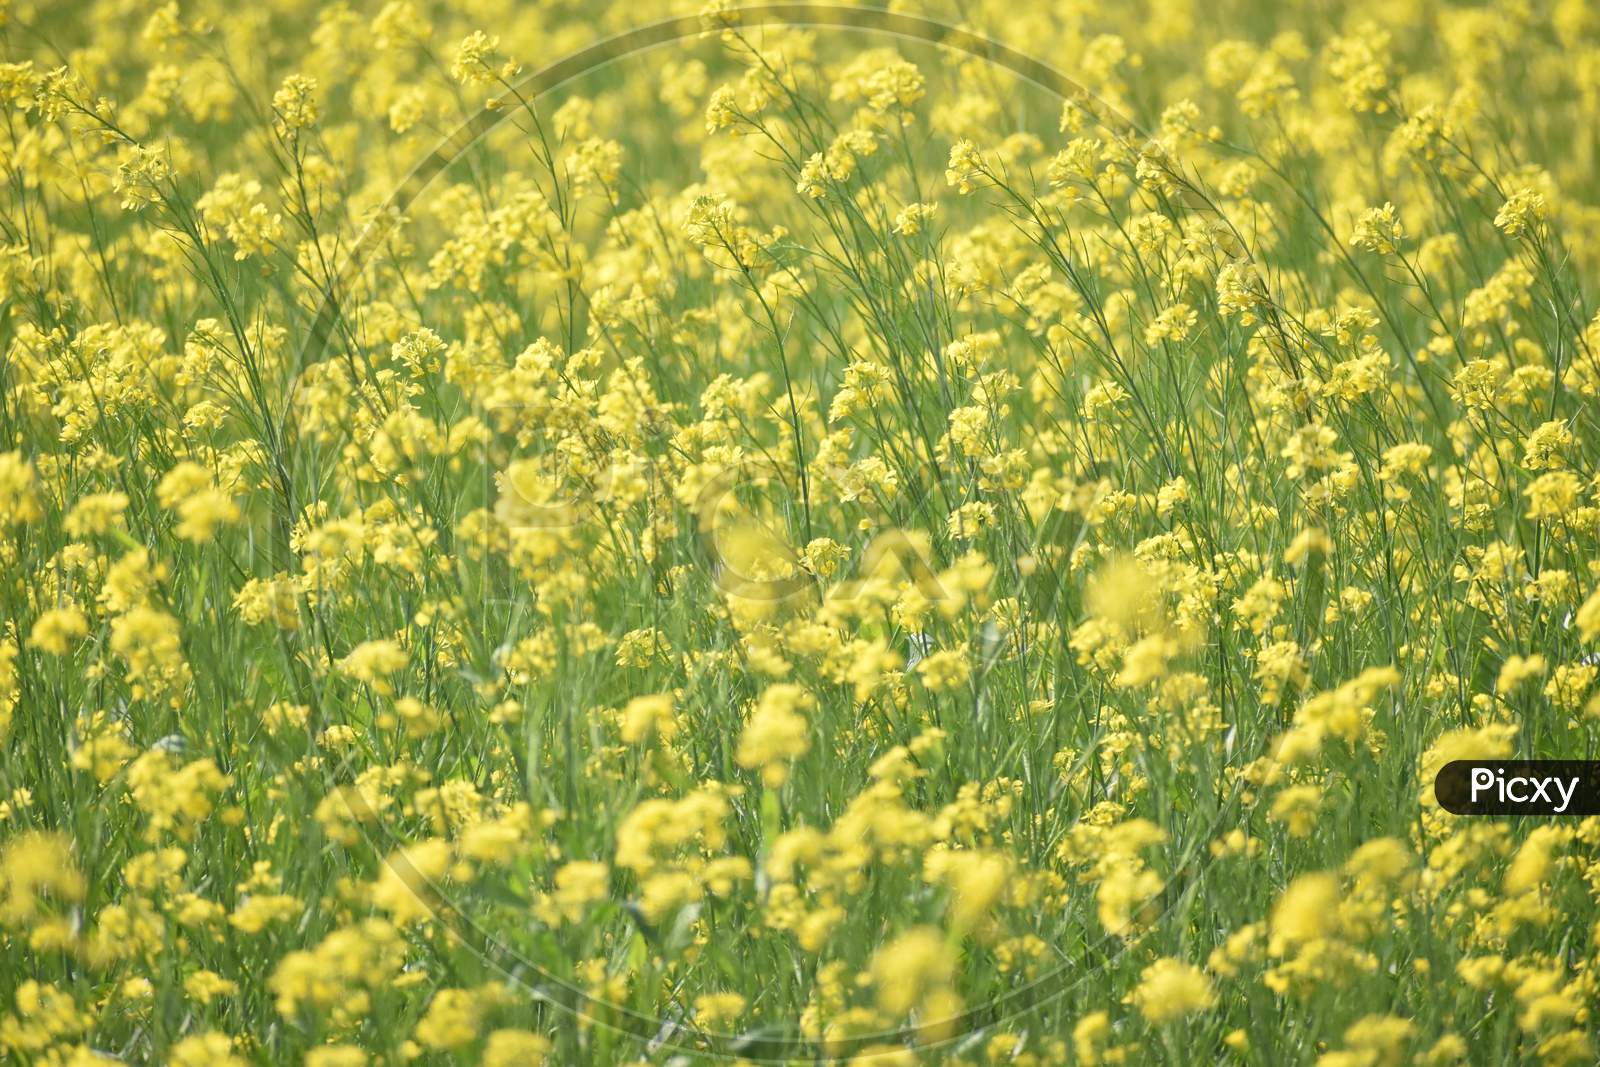 A Windy Morning In A Mustard Field